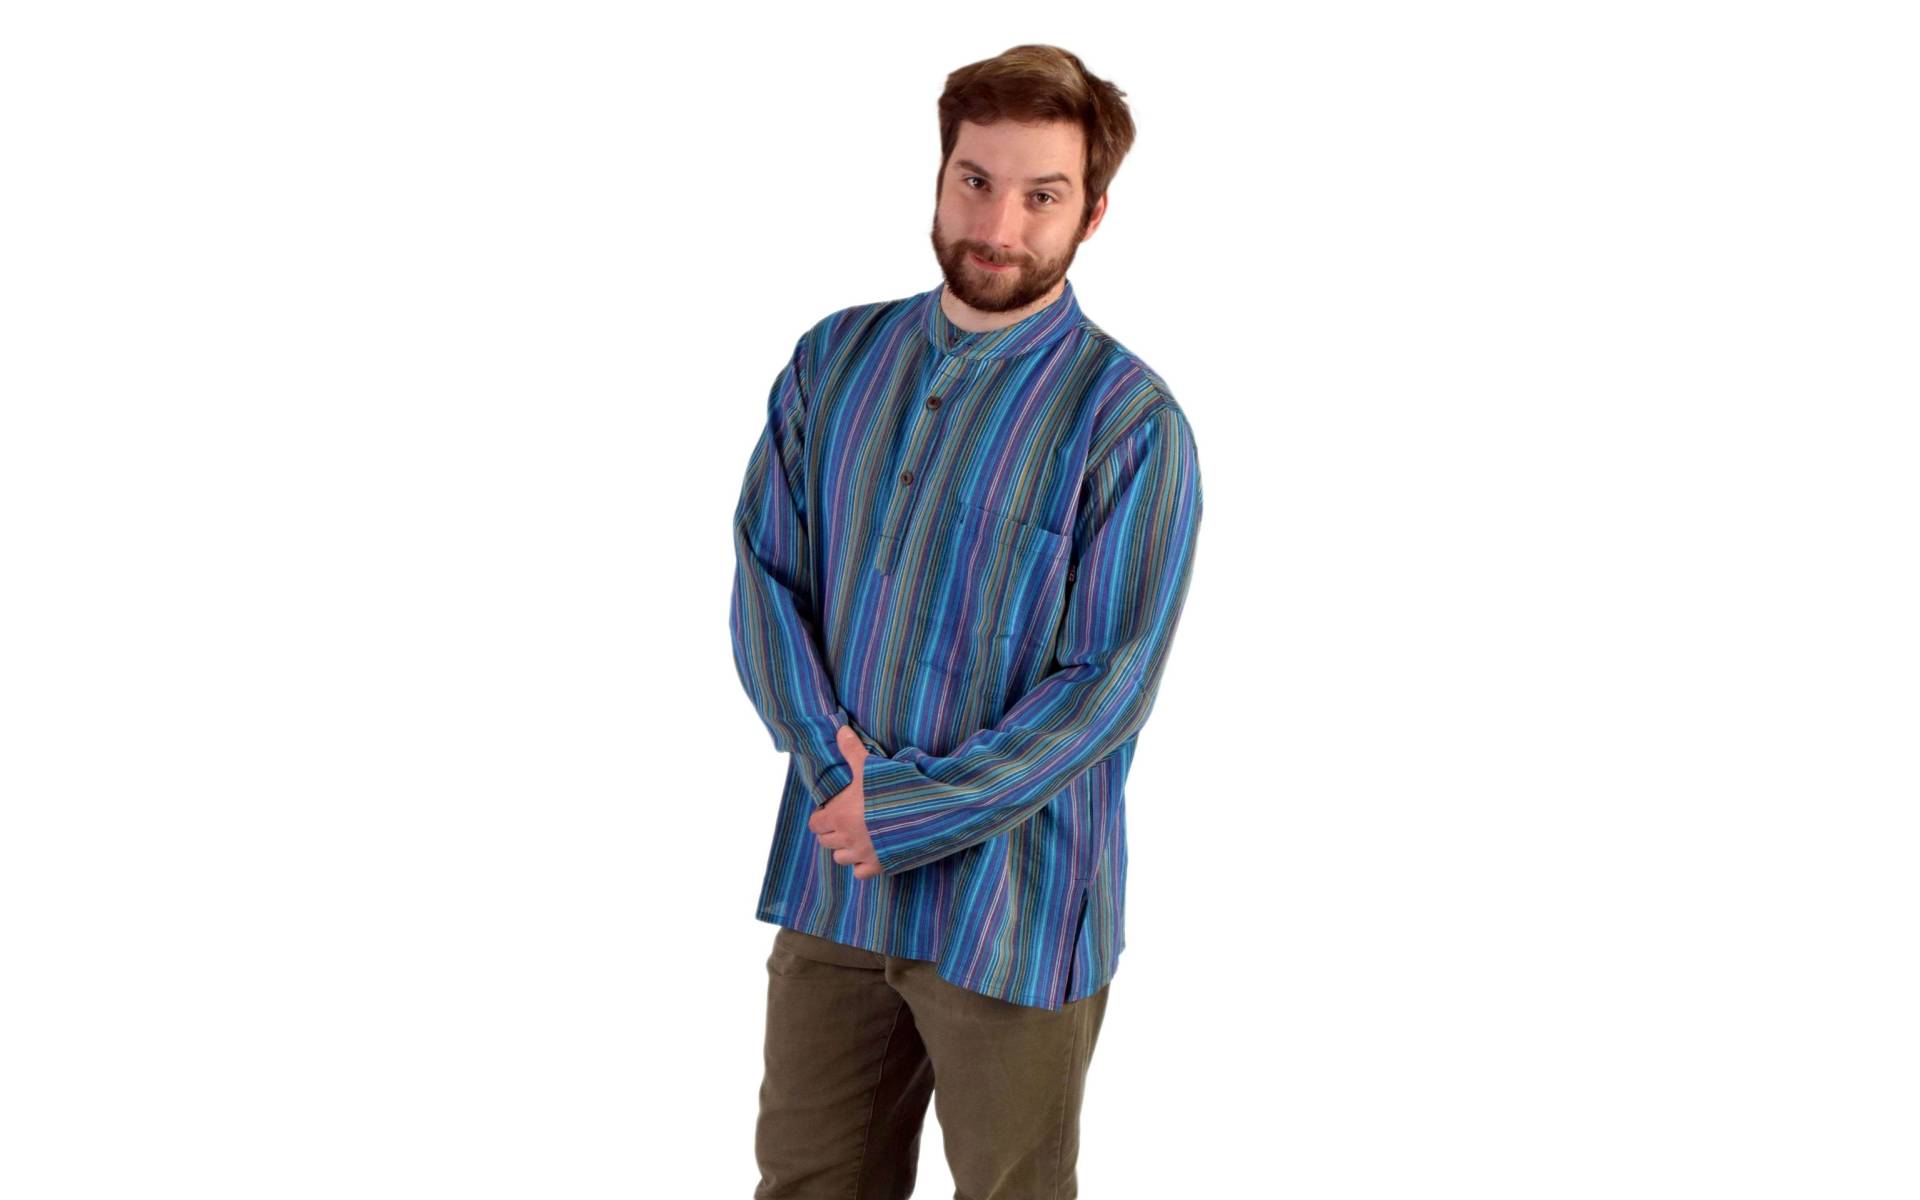 Pruhovaná pánska košeľa-kurta s dlhým rukávom a vreckom, modro-fialová